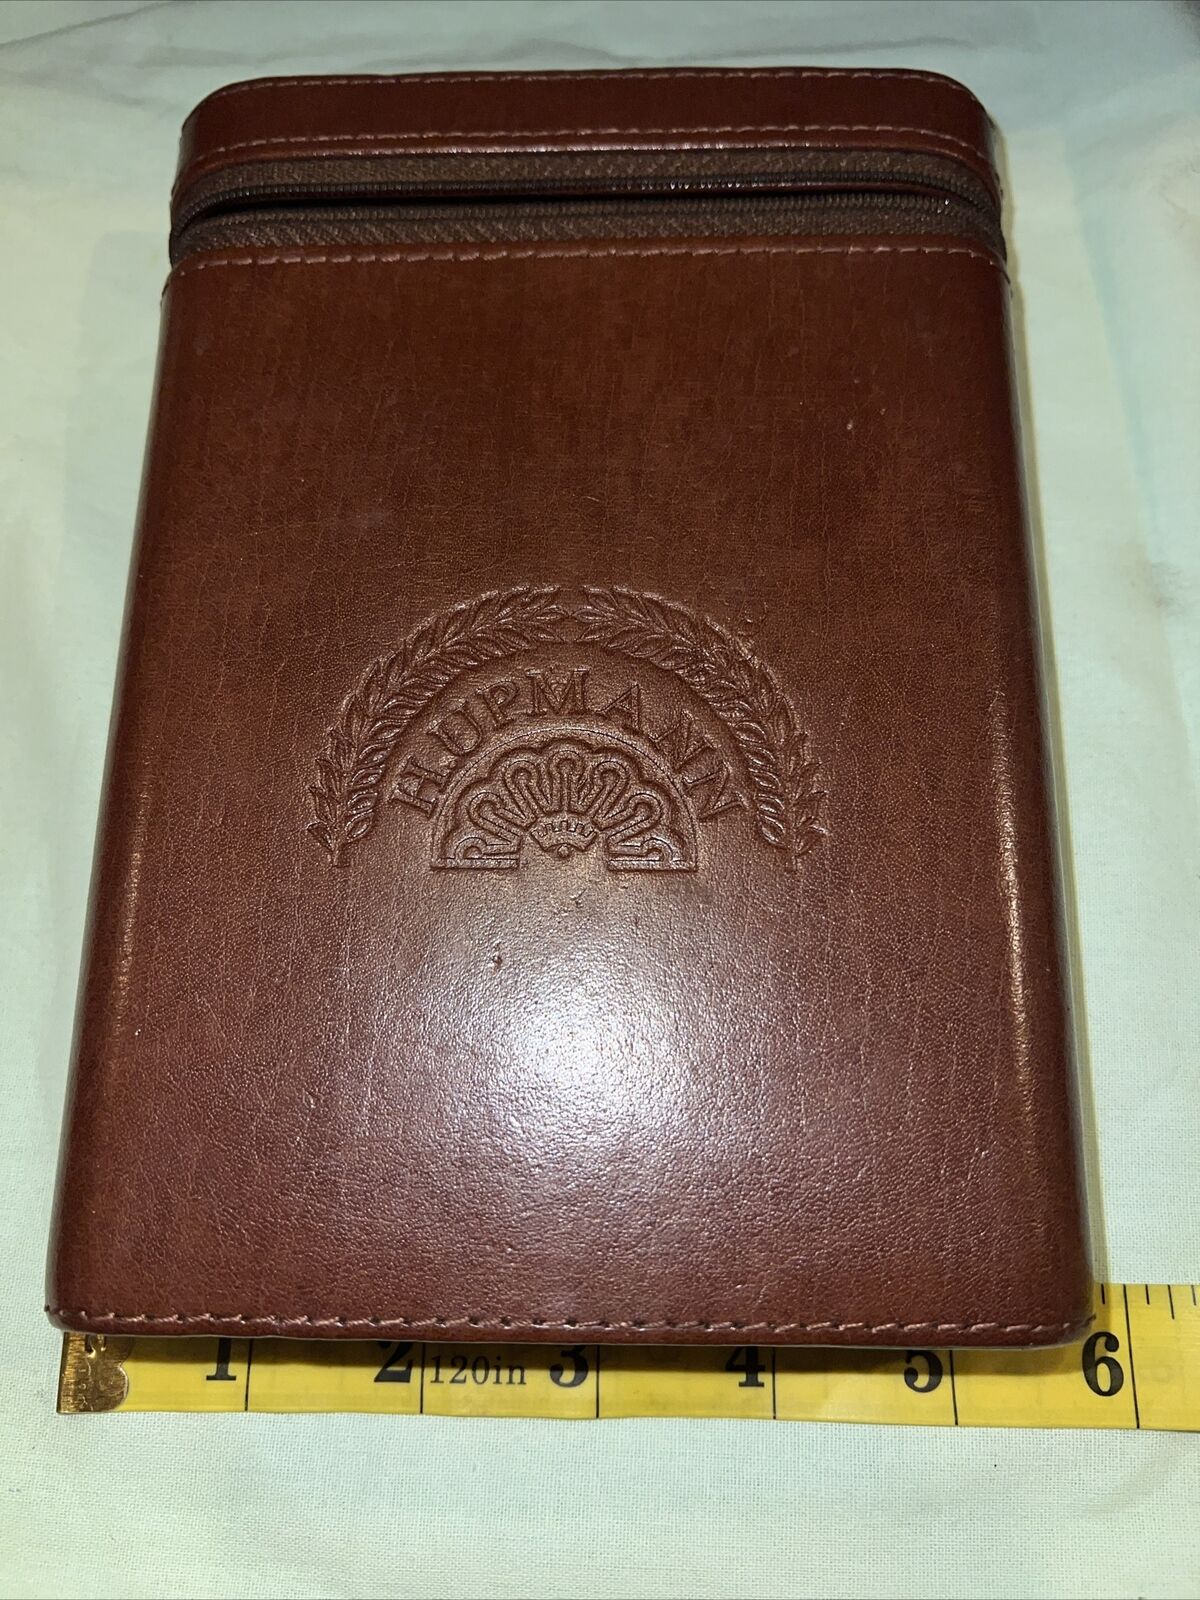 Vintage H. UPMANN Leather Cigar Travel Case With Cedar Inside